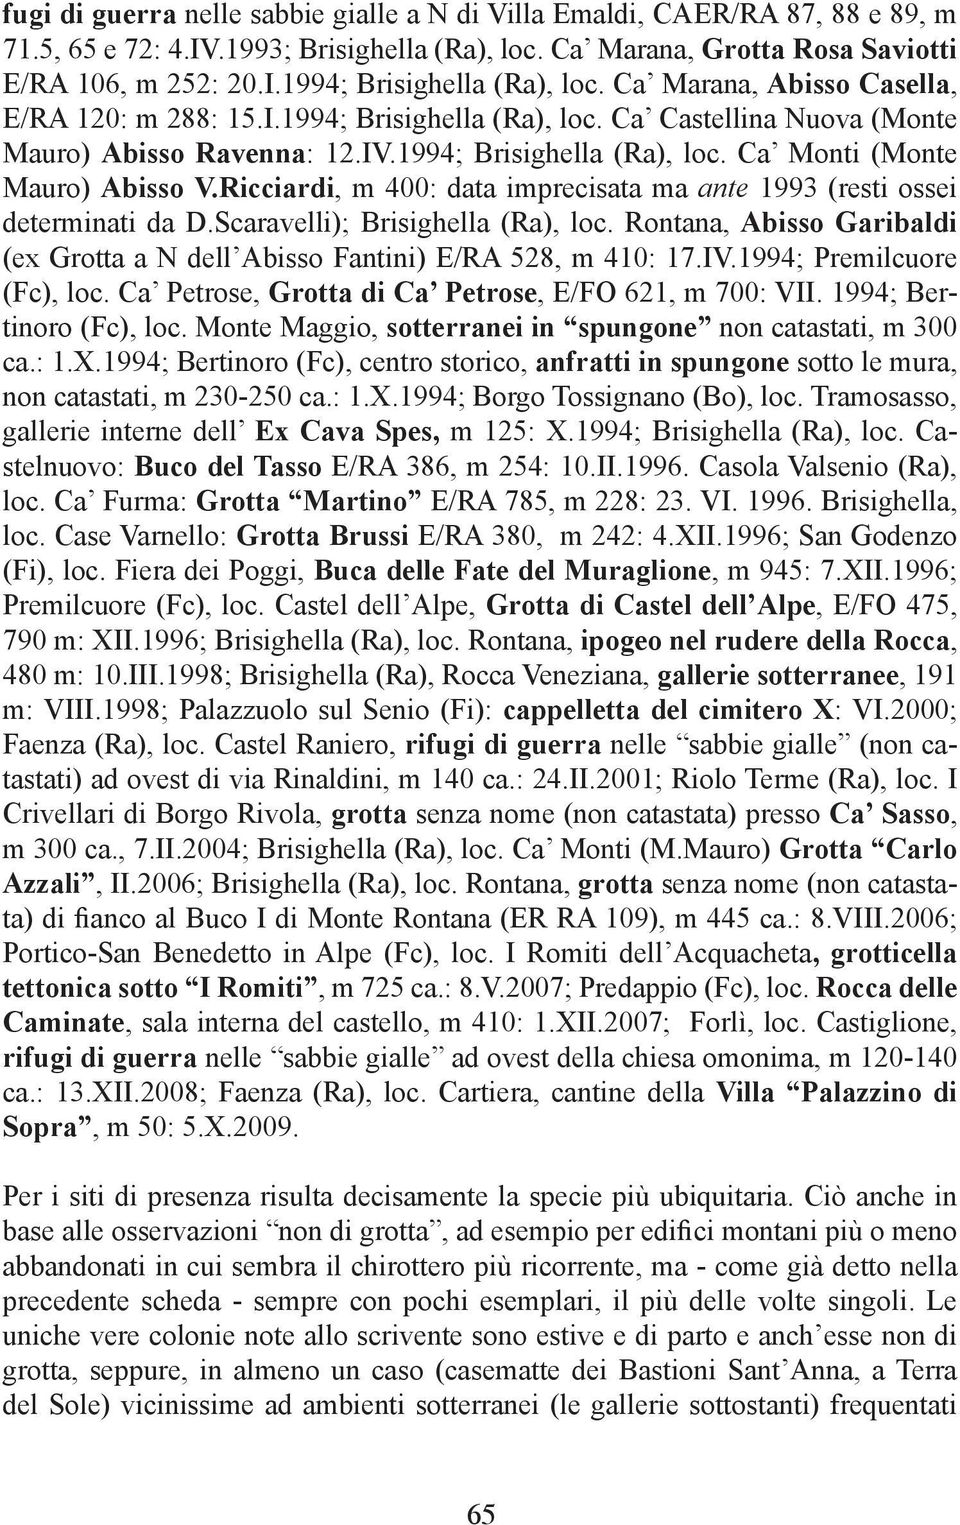 Ricciardi, m 400: data imprecisata ma ante 1993 (resti ossei determinati da D.Scaravelli); Brisighella (Ra), loc. Rontana, Abisso Garibaldi (ex Grotta a N dell Abisso Fantini) E/RA 528, m 410: 17.IV.